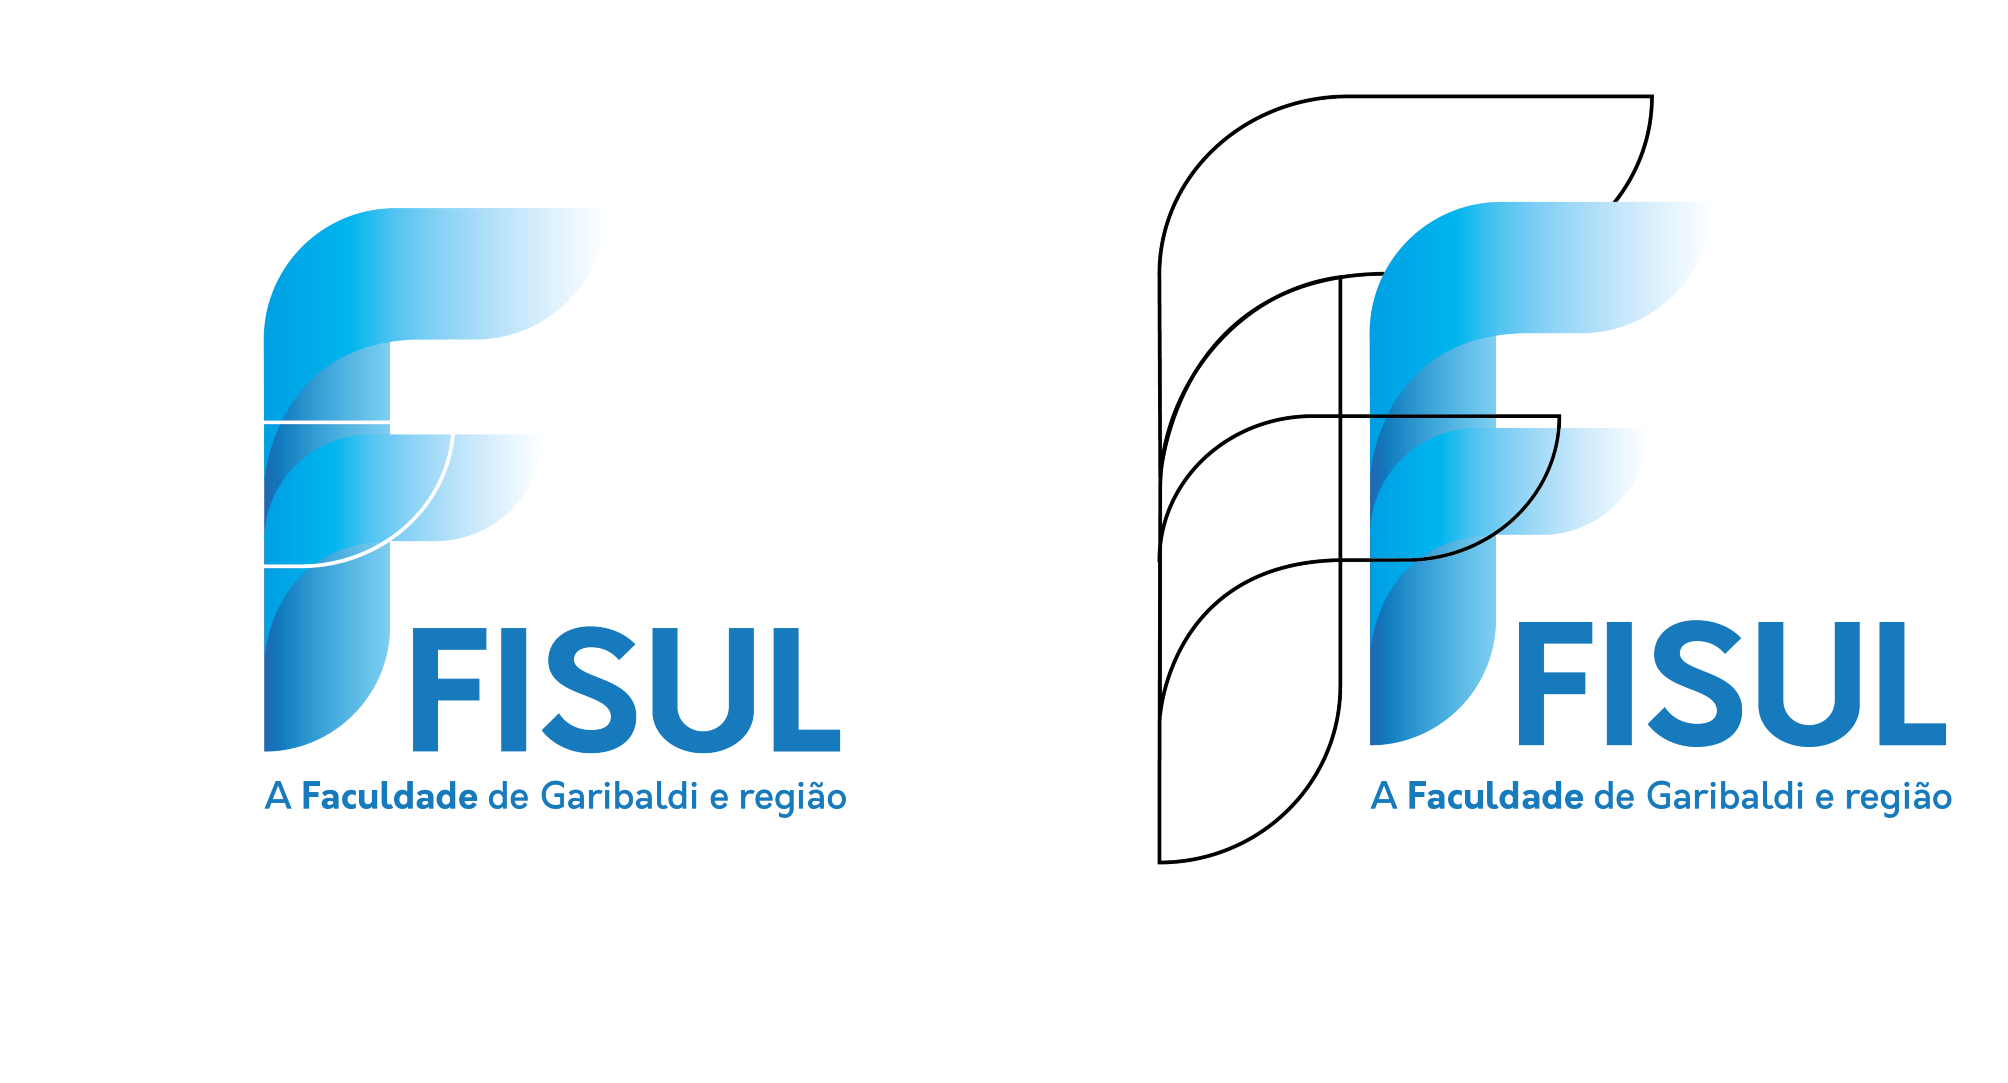 FISUL reposiciona sua marca ao completar 18 anos